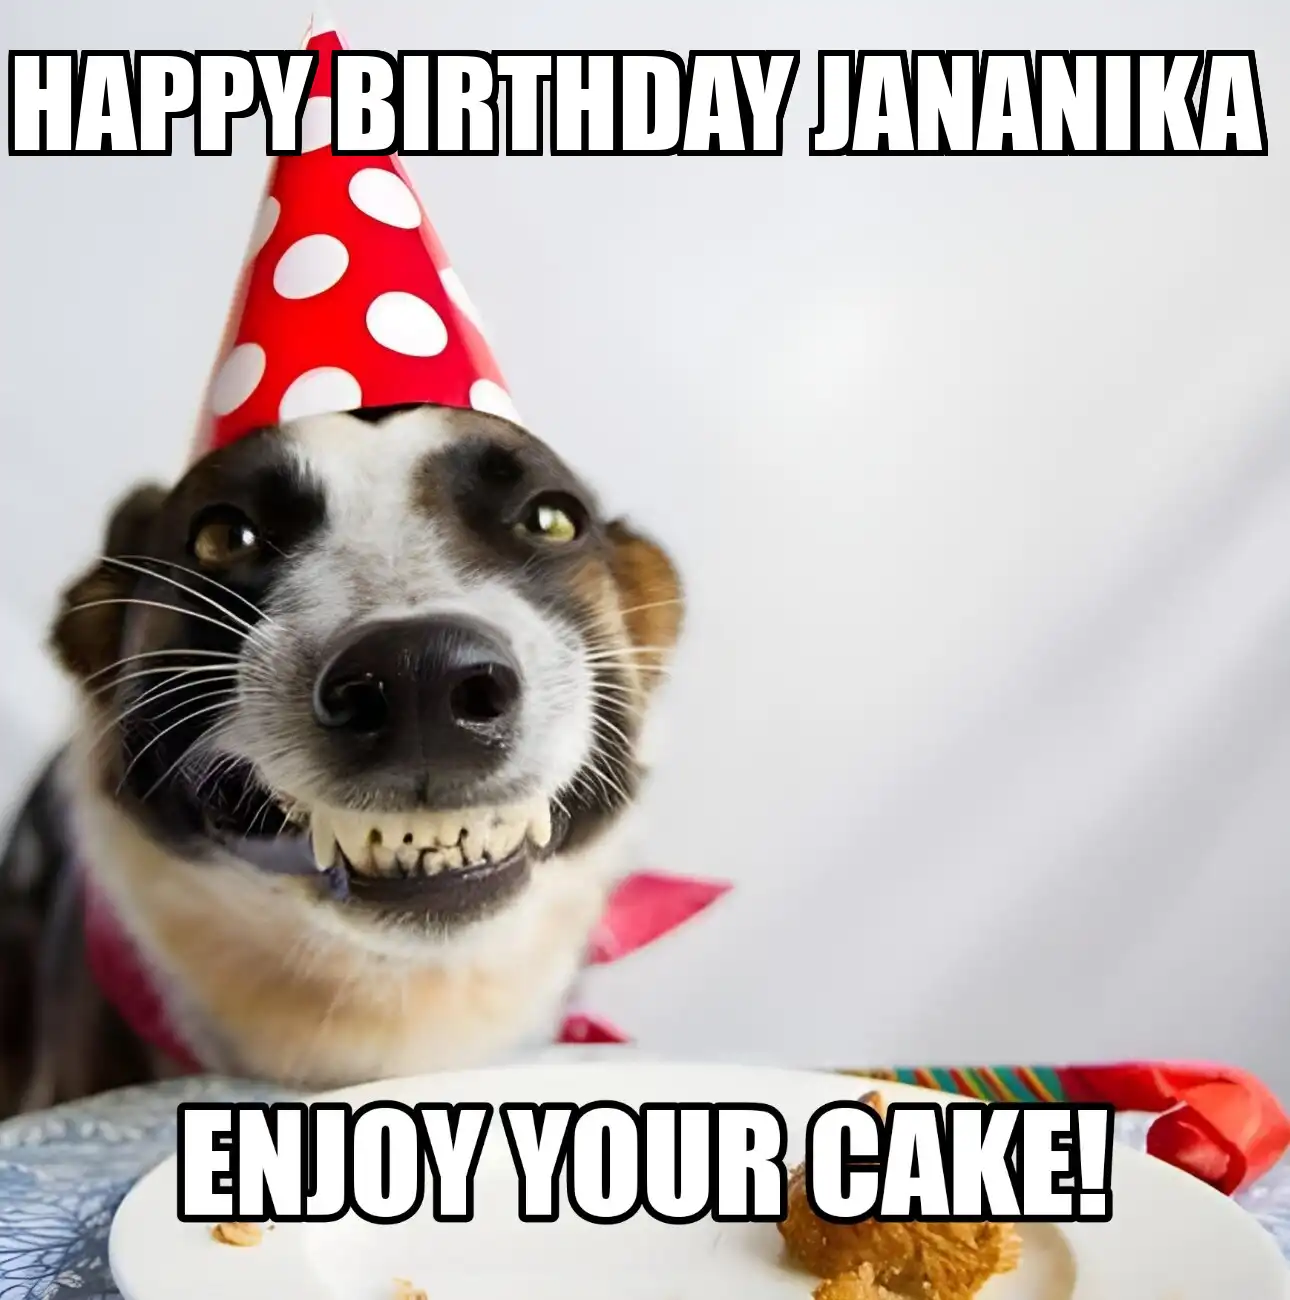 Happy Birthday Jananika Enjoy Your Cake Dog Meme